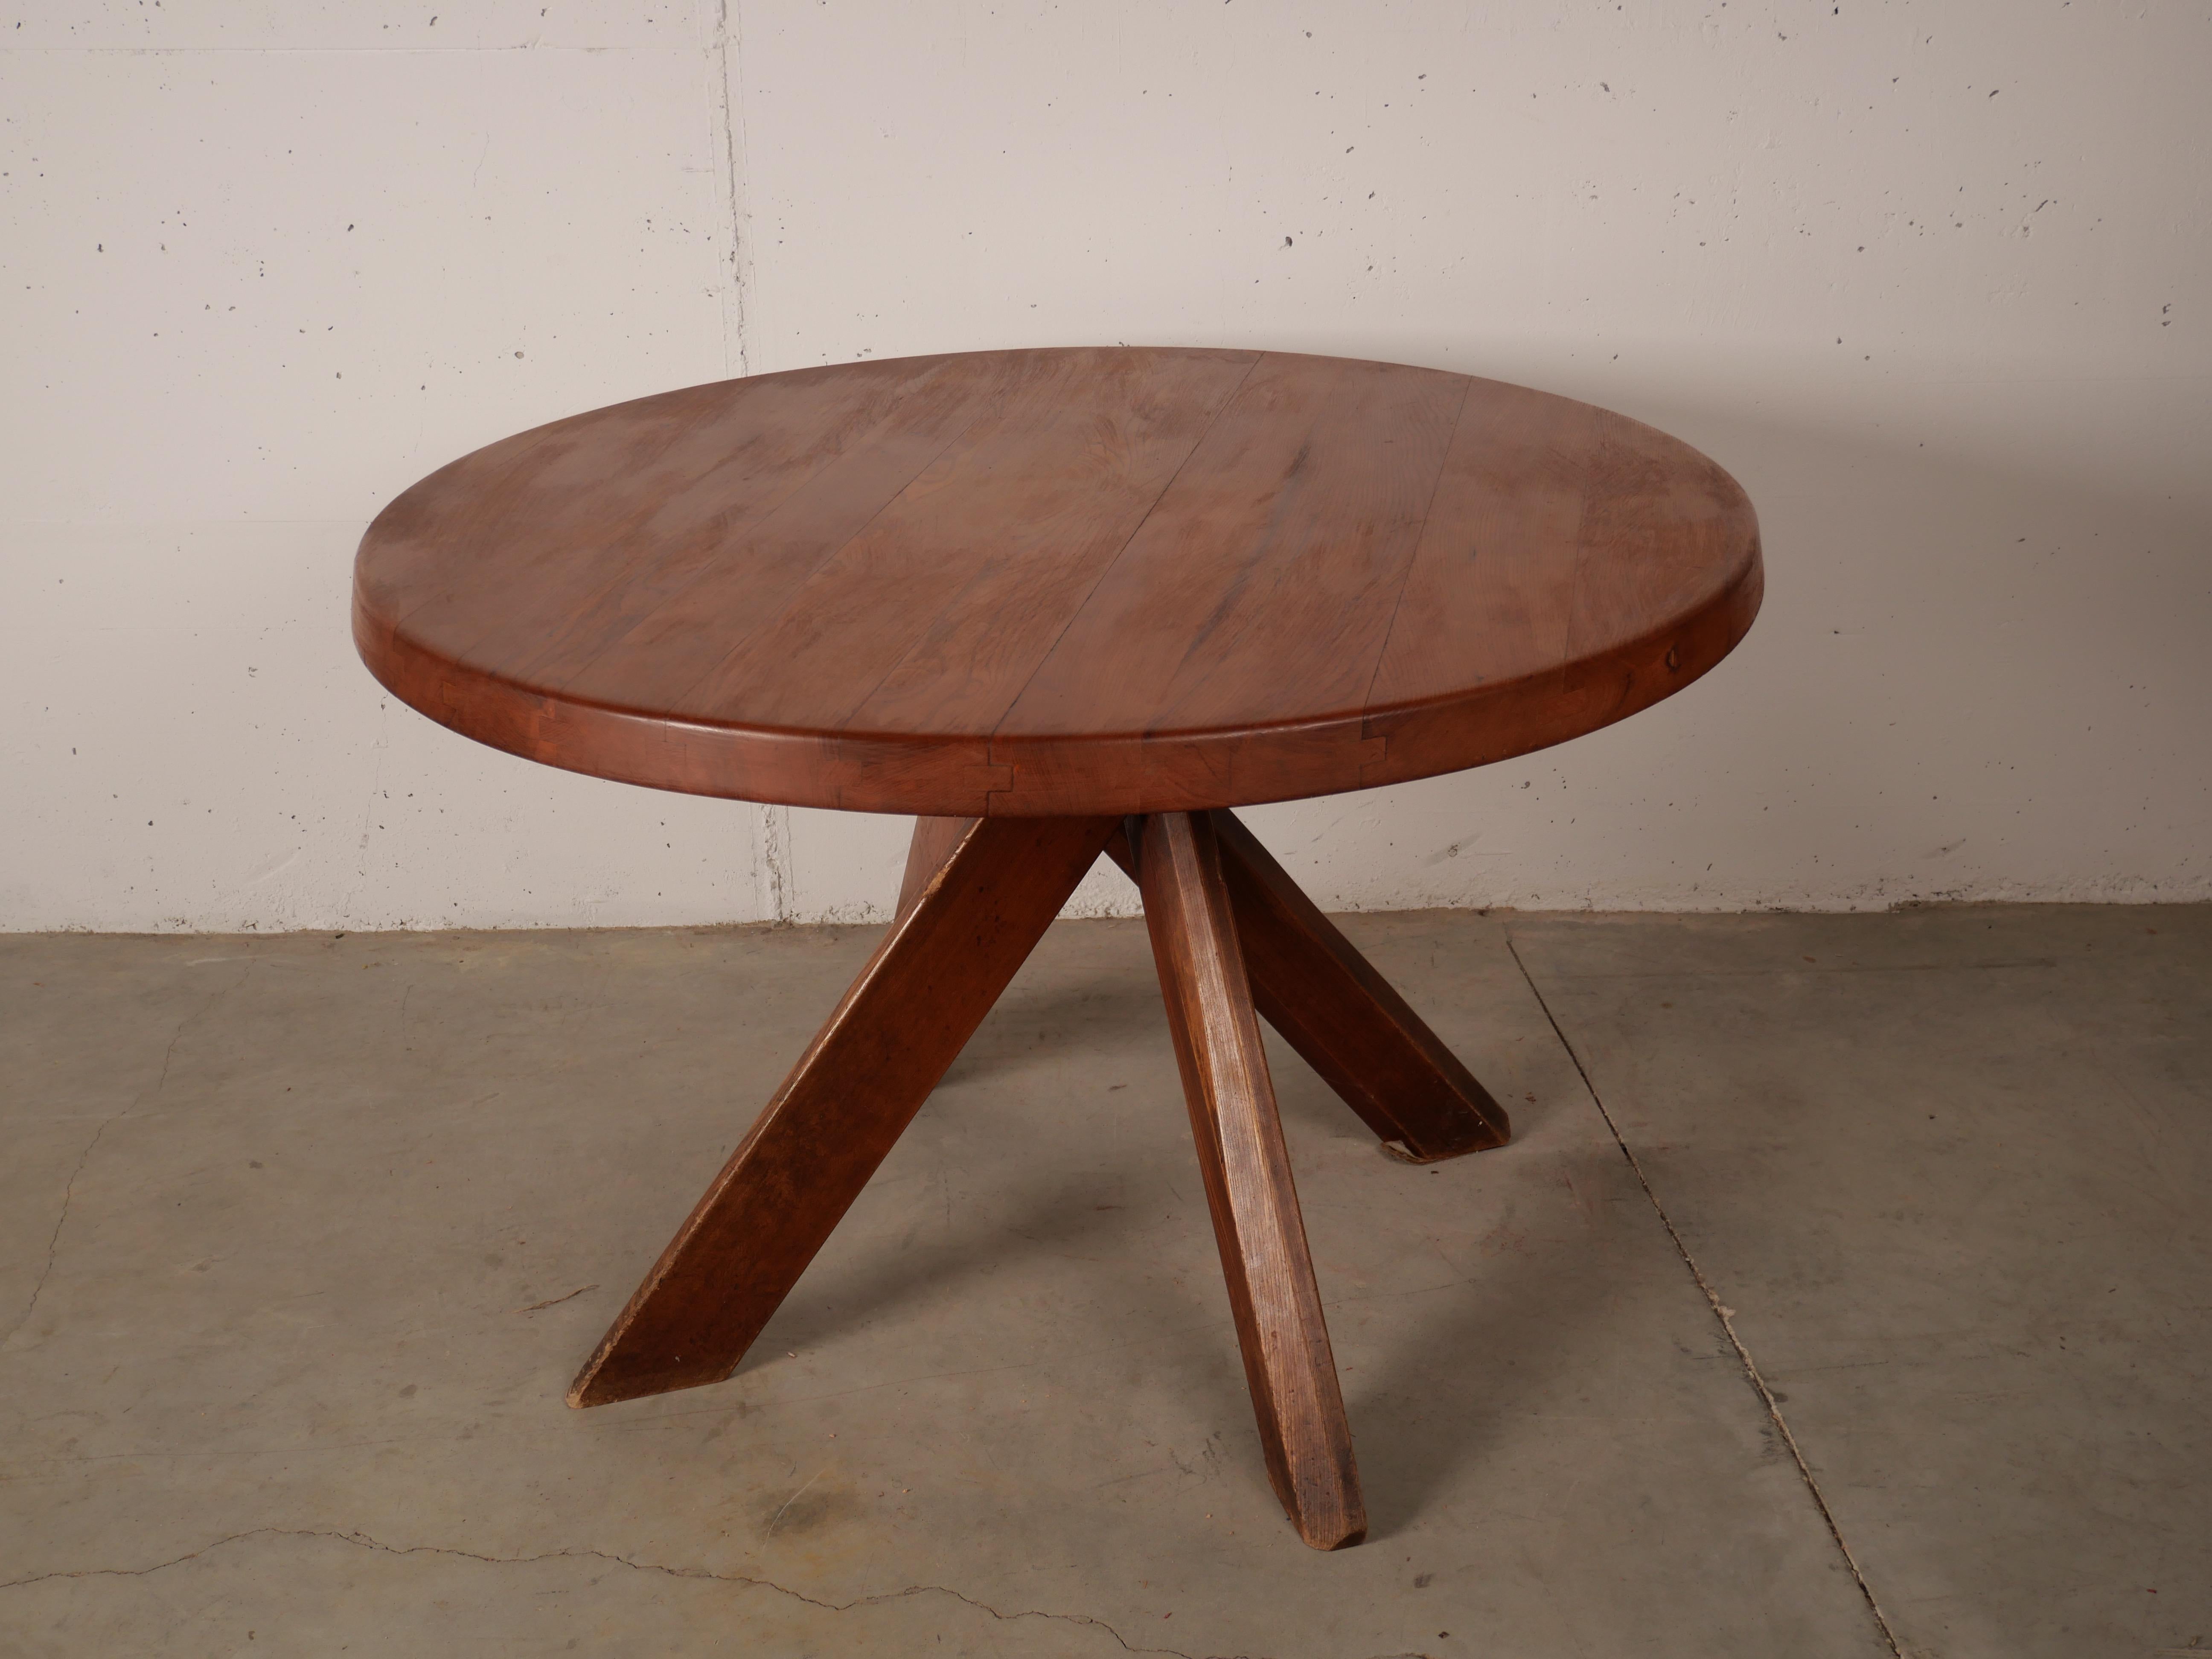 Cette table est une commande spéciale réalisée par Pierre Chapo pour un client:: le diamètre du plateau est de 110 cm avec 4 pieds:: dans un bel état de patine. La forme de la base crée un aspect très ouvert et en fait un objet qui rend un espace